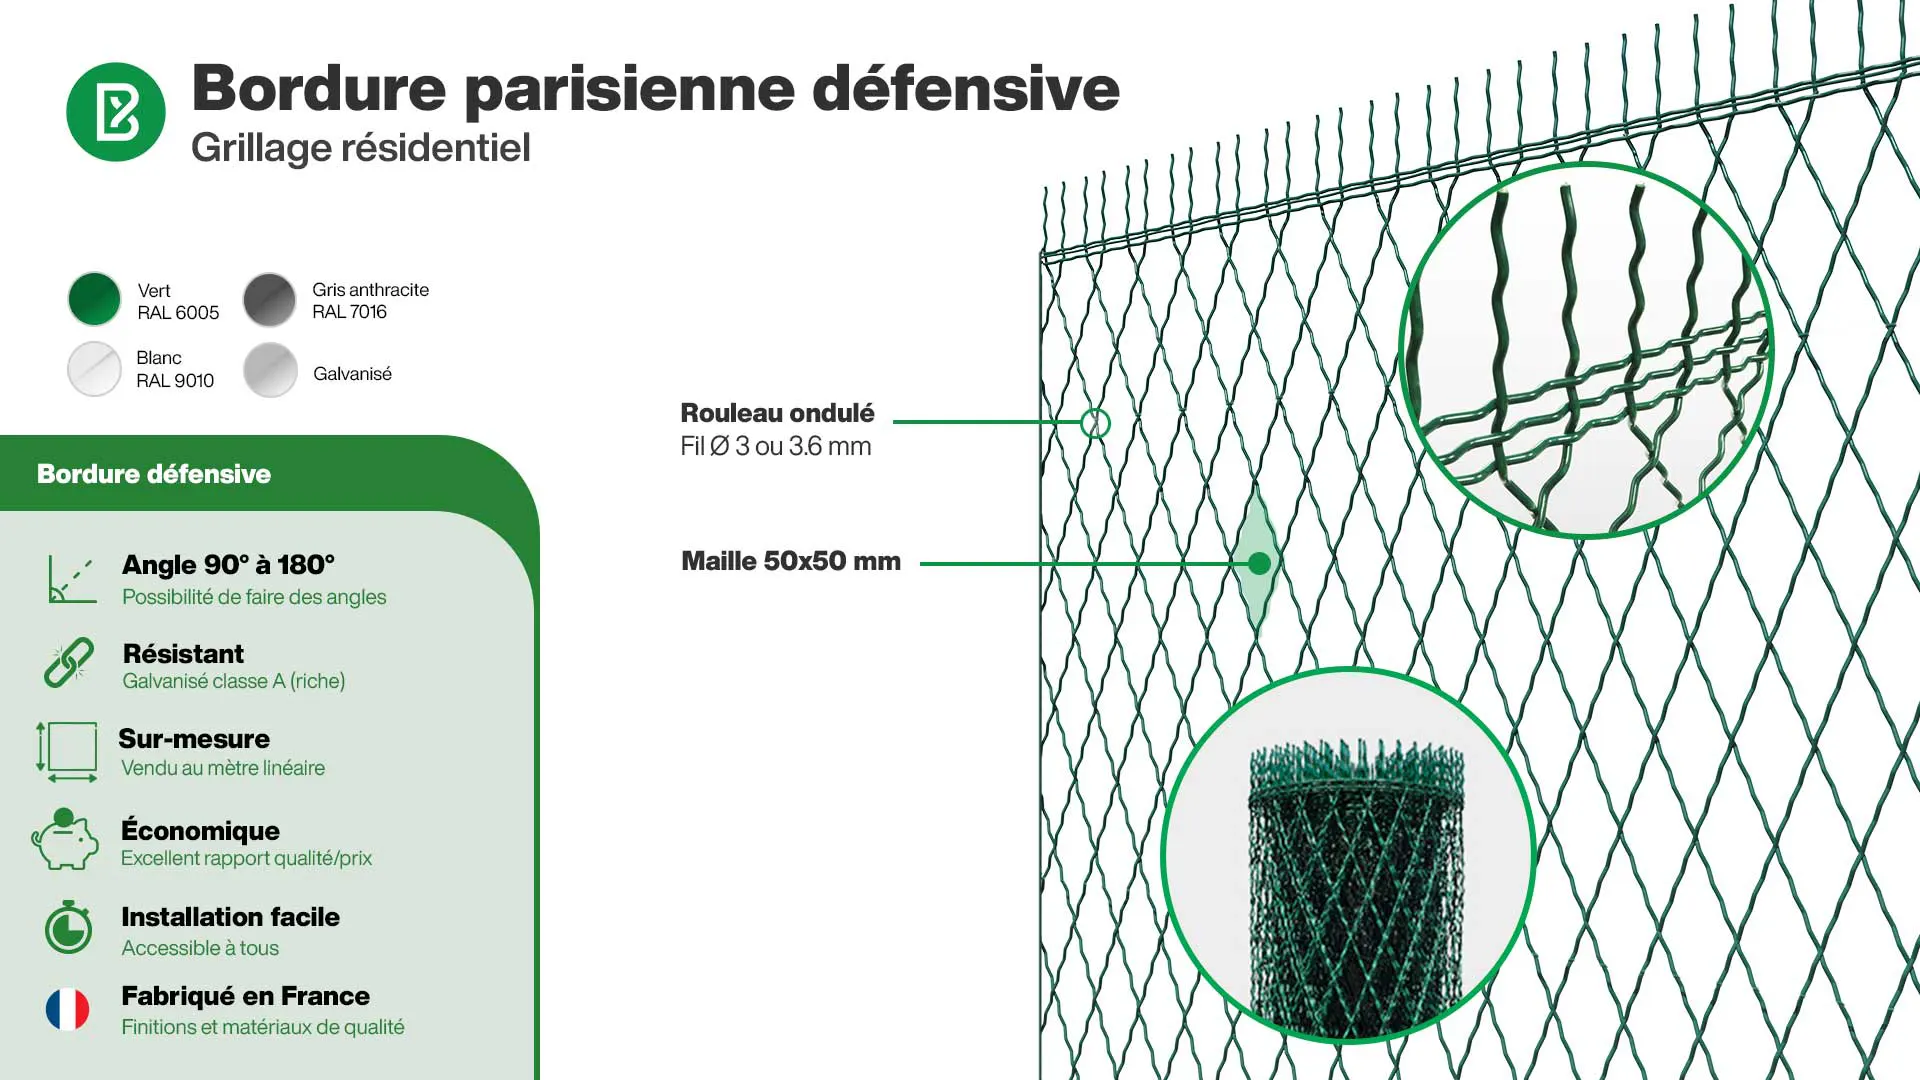 Grillage souple : Infographie de la bordure parisienne défensive